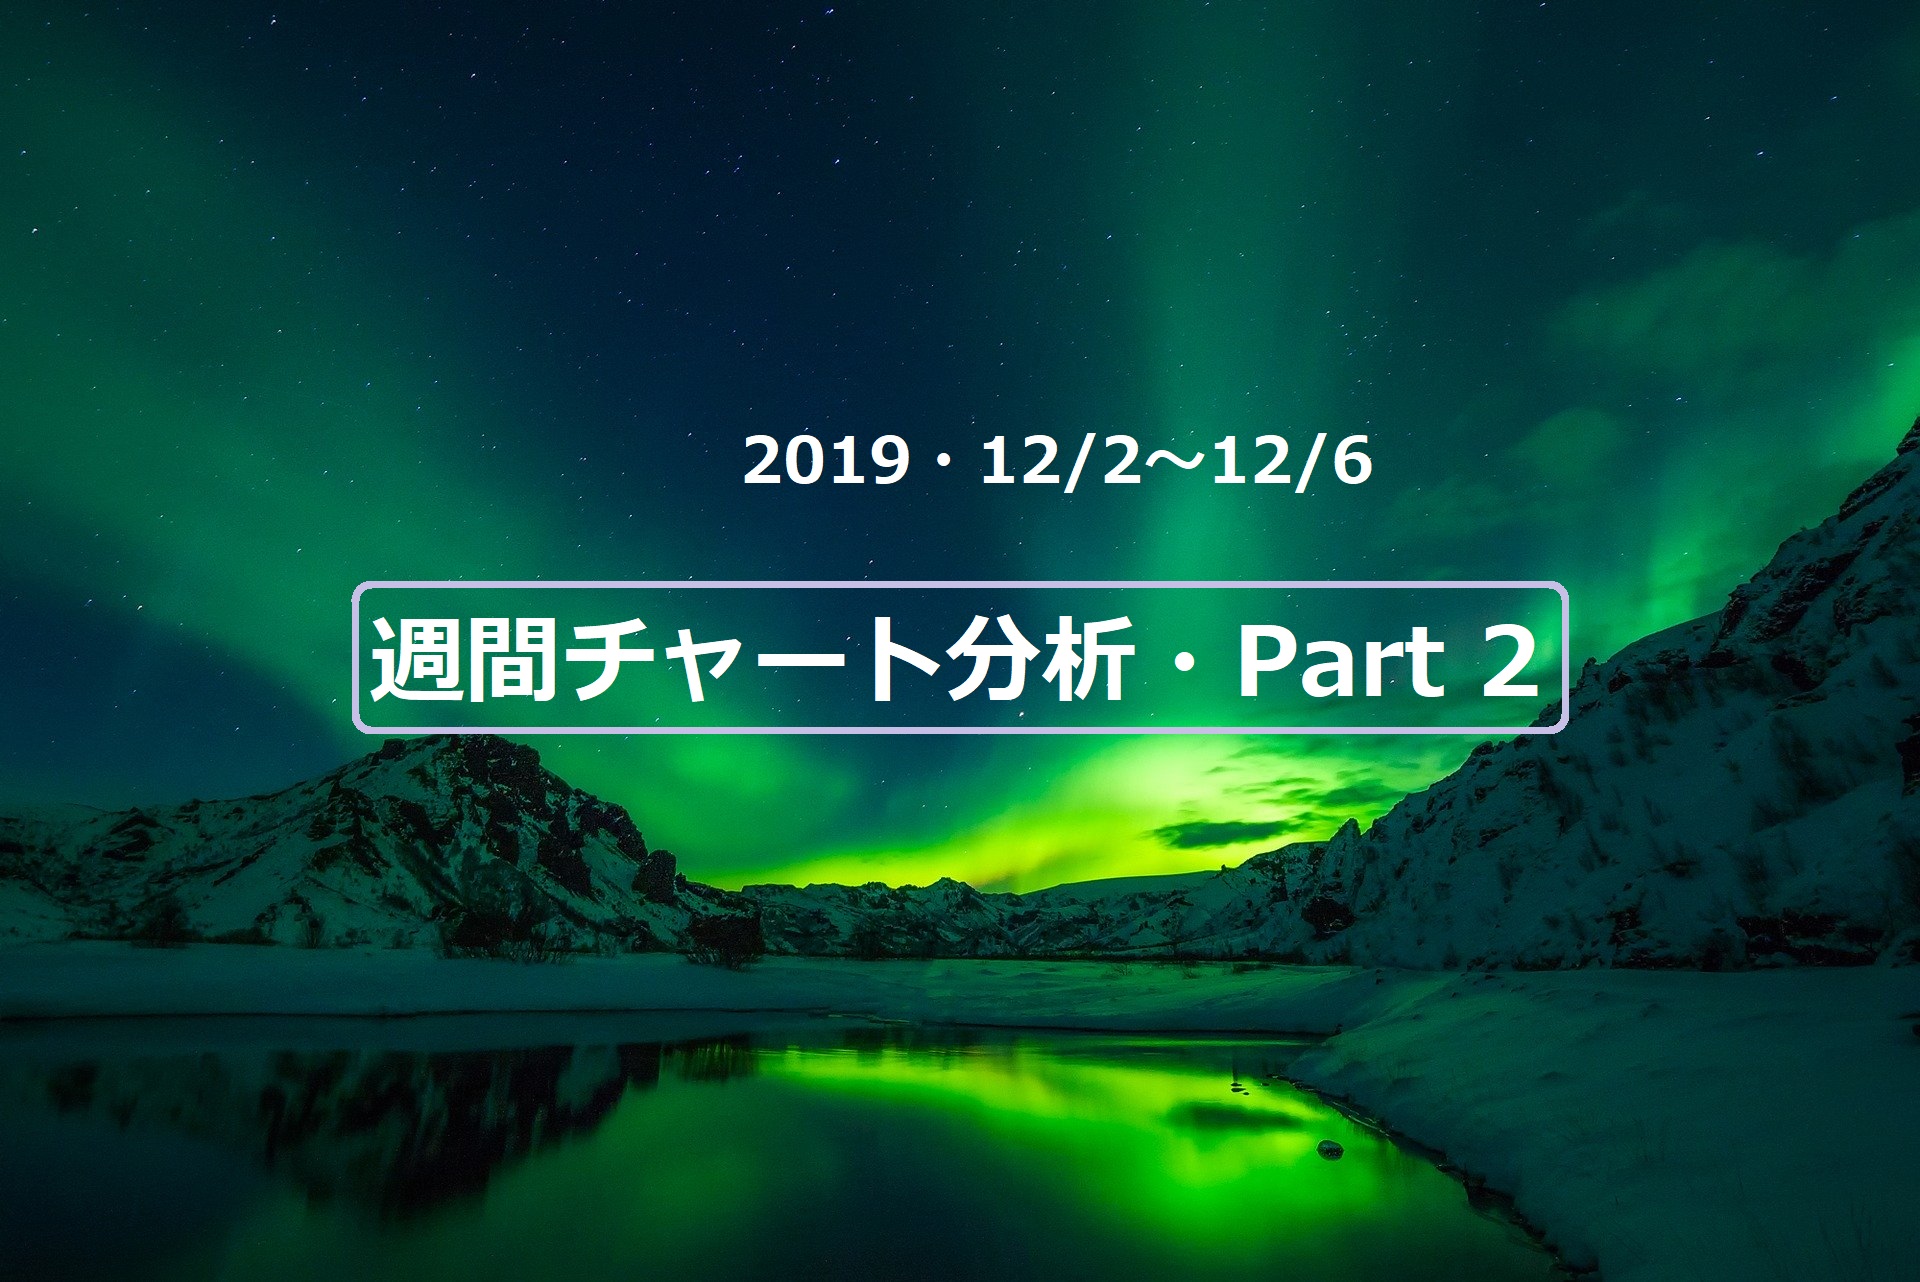 【FX】週間チャート分析【2019・12/2～12/6】【Part 2】